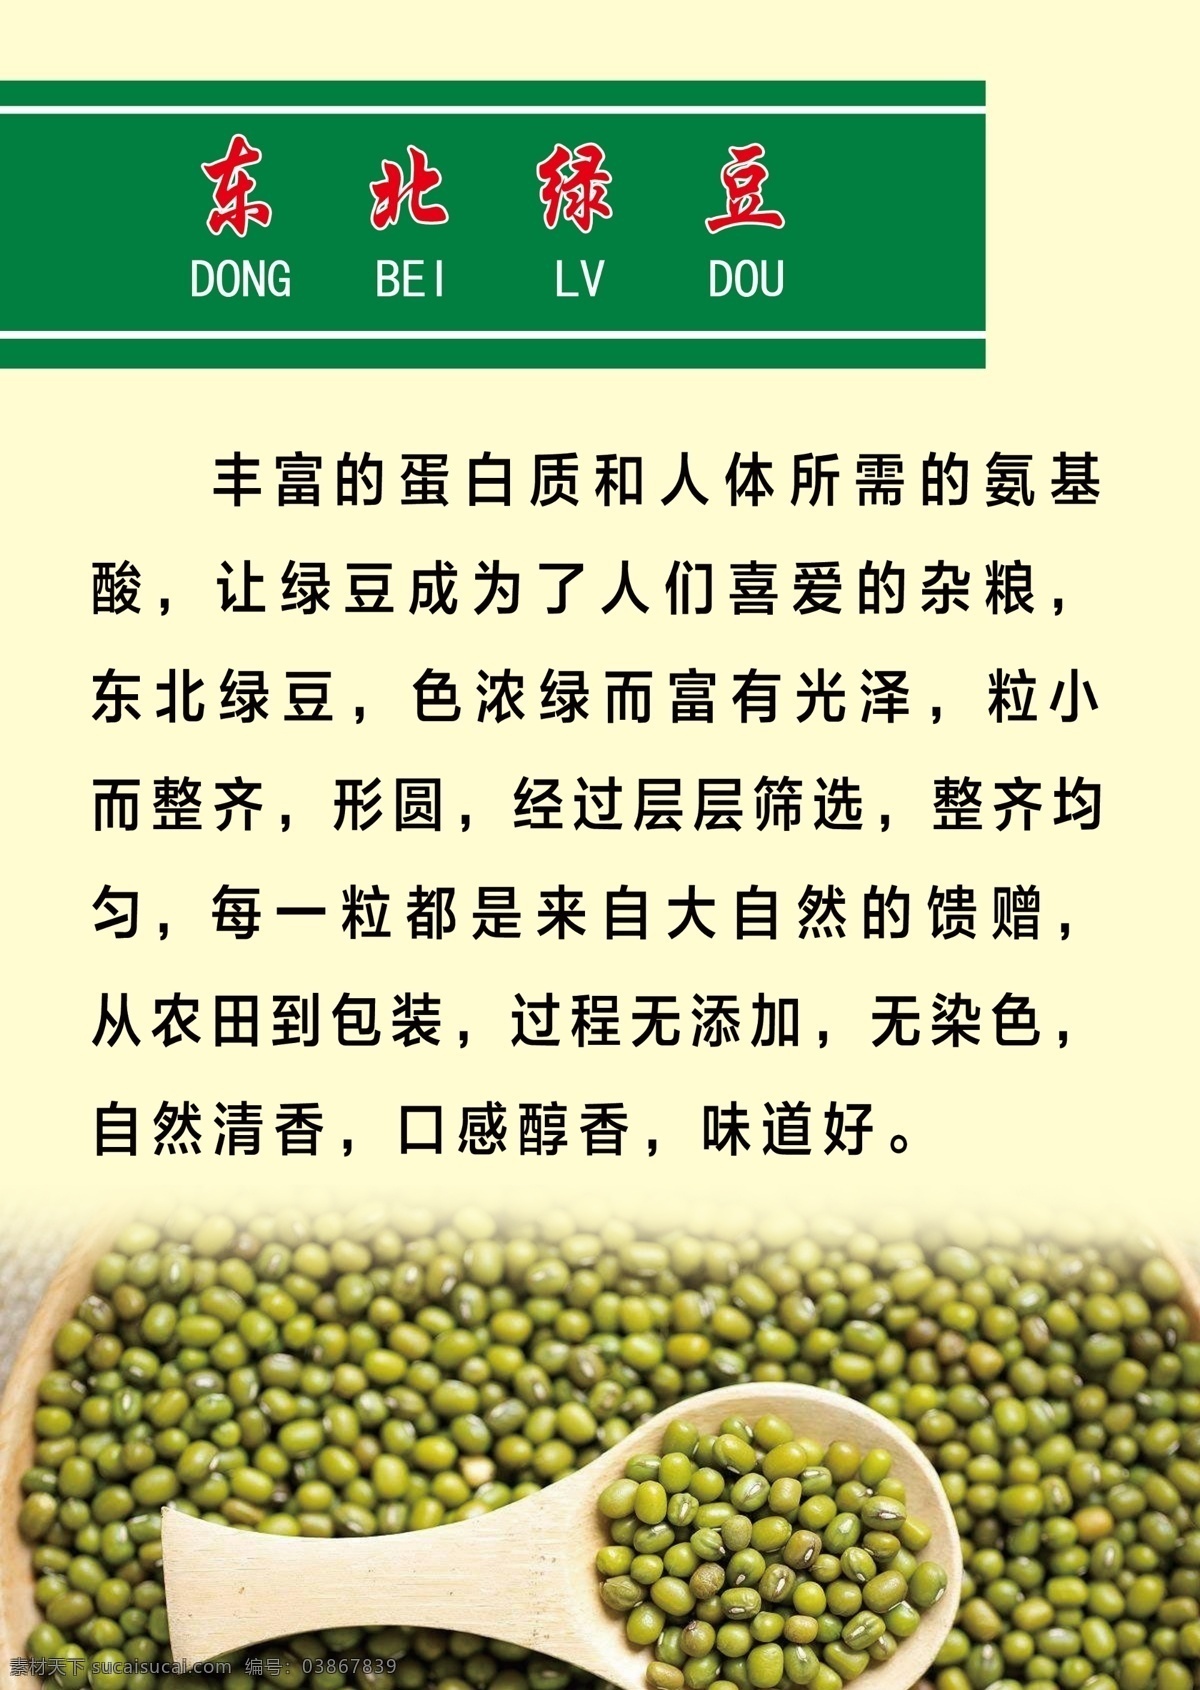 东北绿豆 绿豆 豆制品 杂粮 黄豆 粮食 生活百科 学习用品